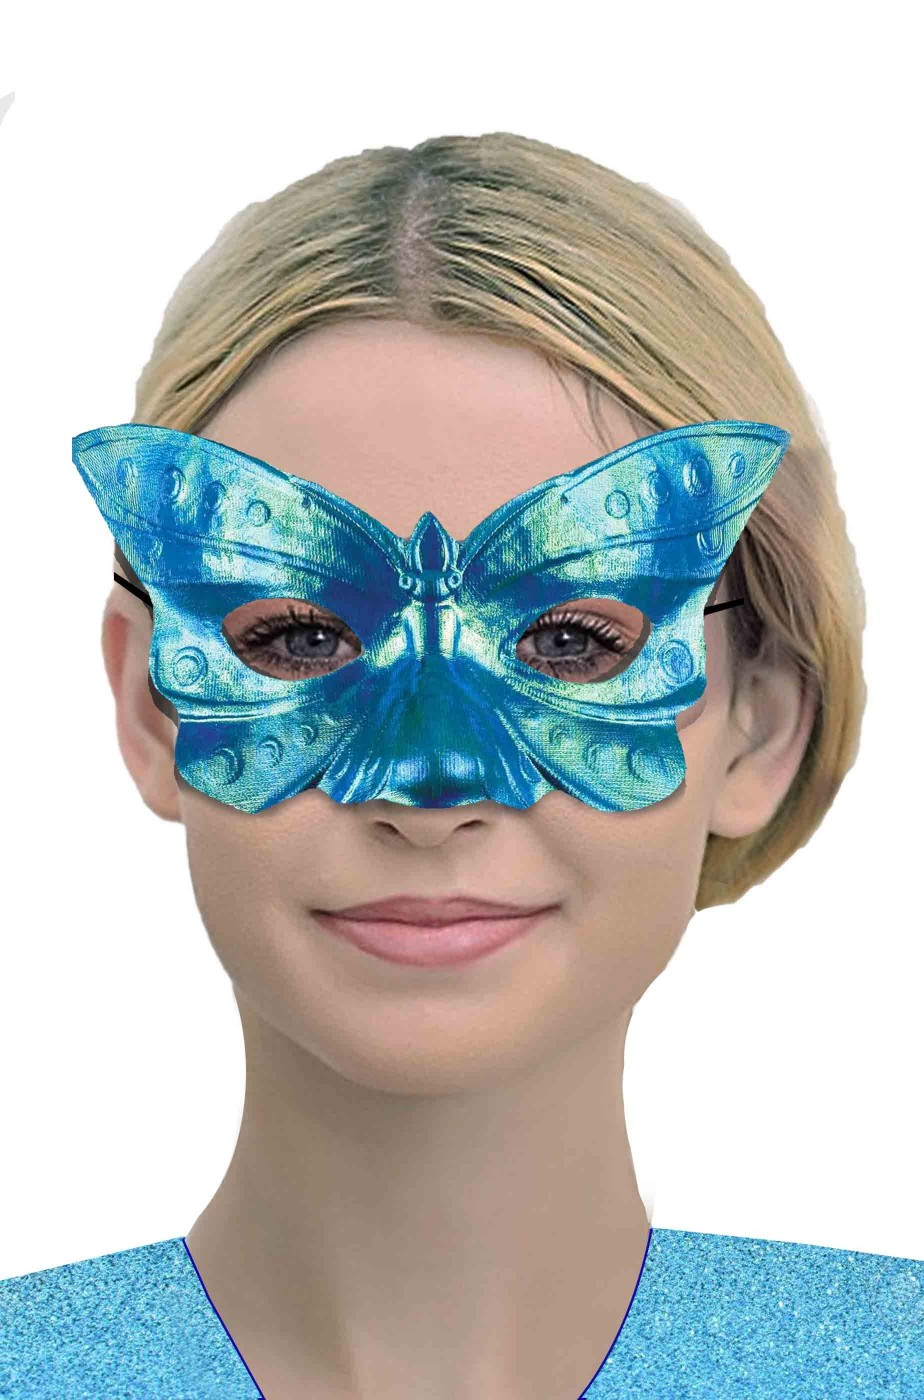 Maschera di carnevale veneziano azzurra riflettente